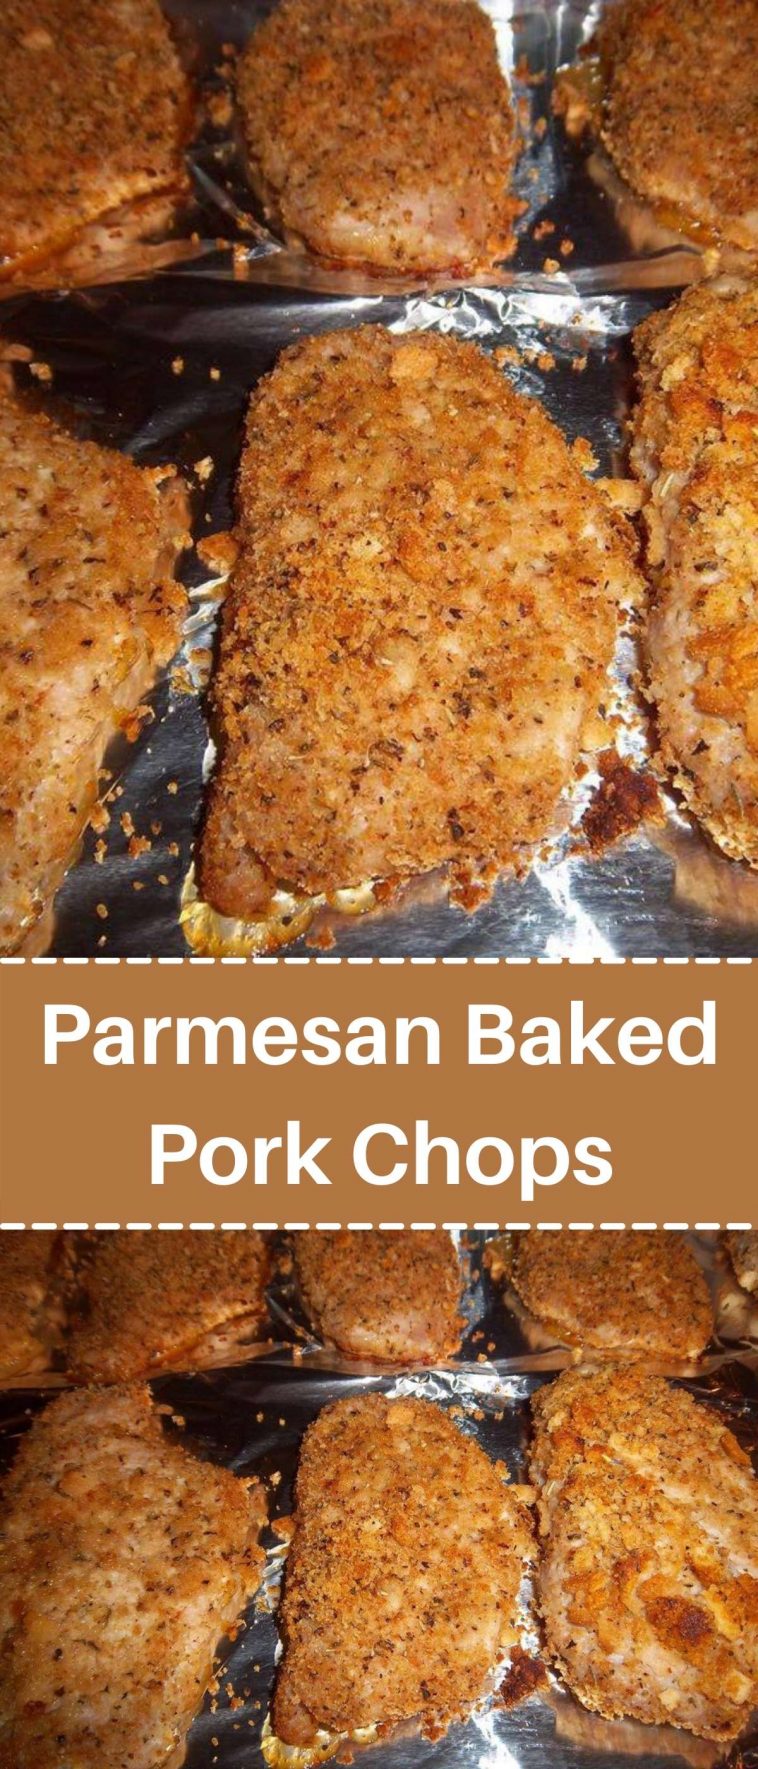 Parmesan Baked Pork Chops